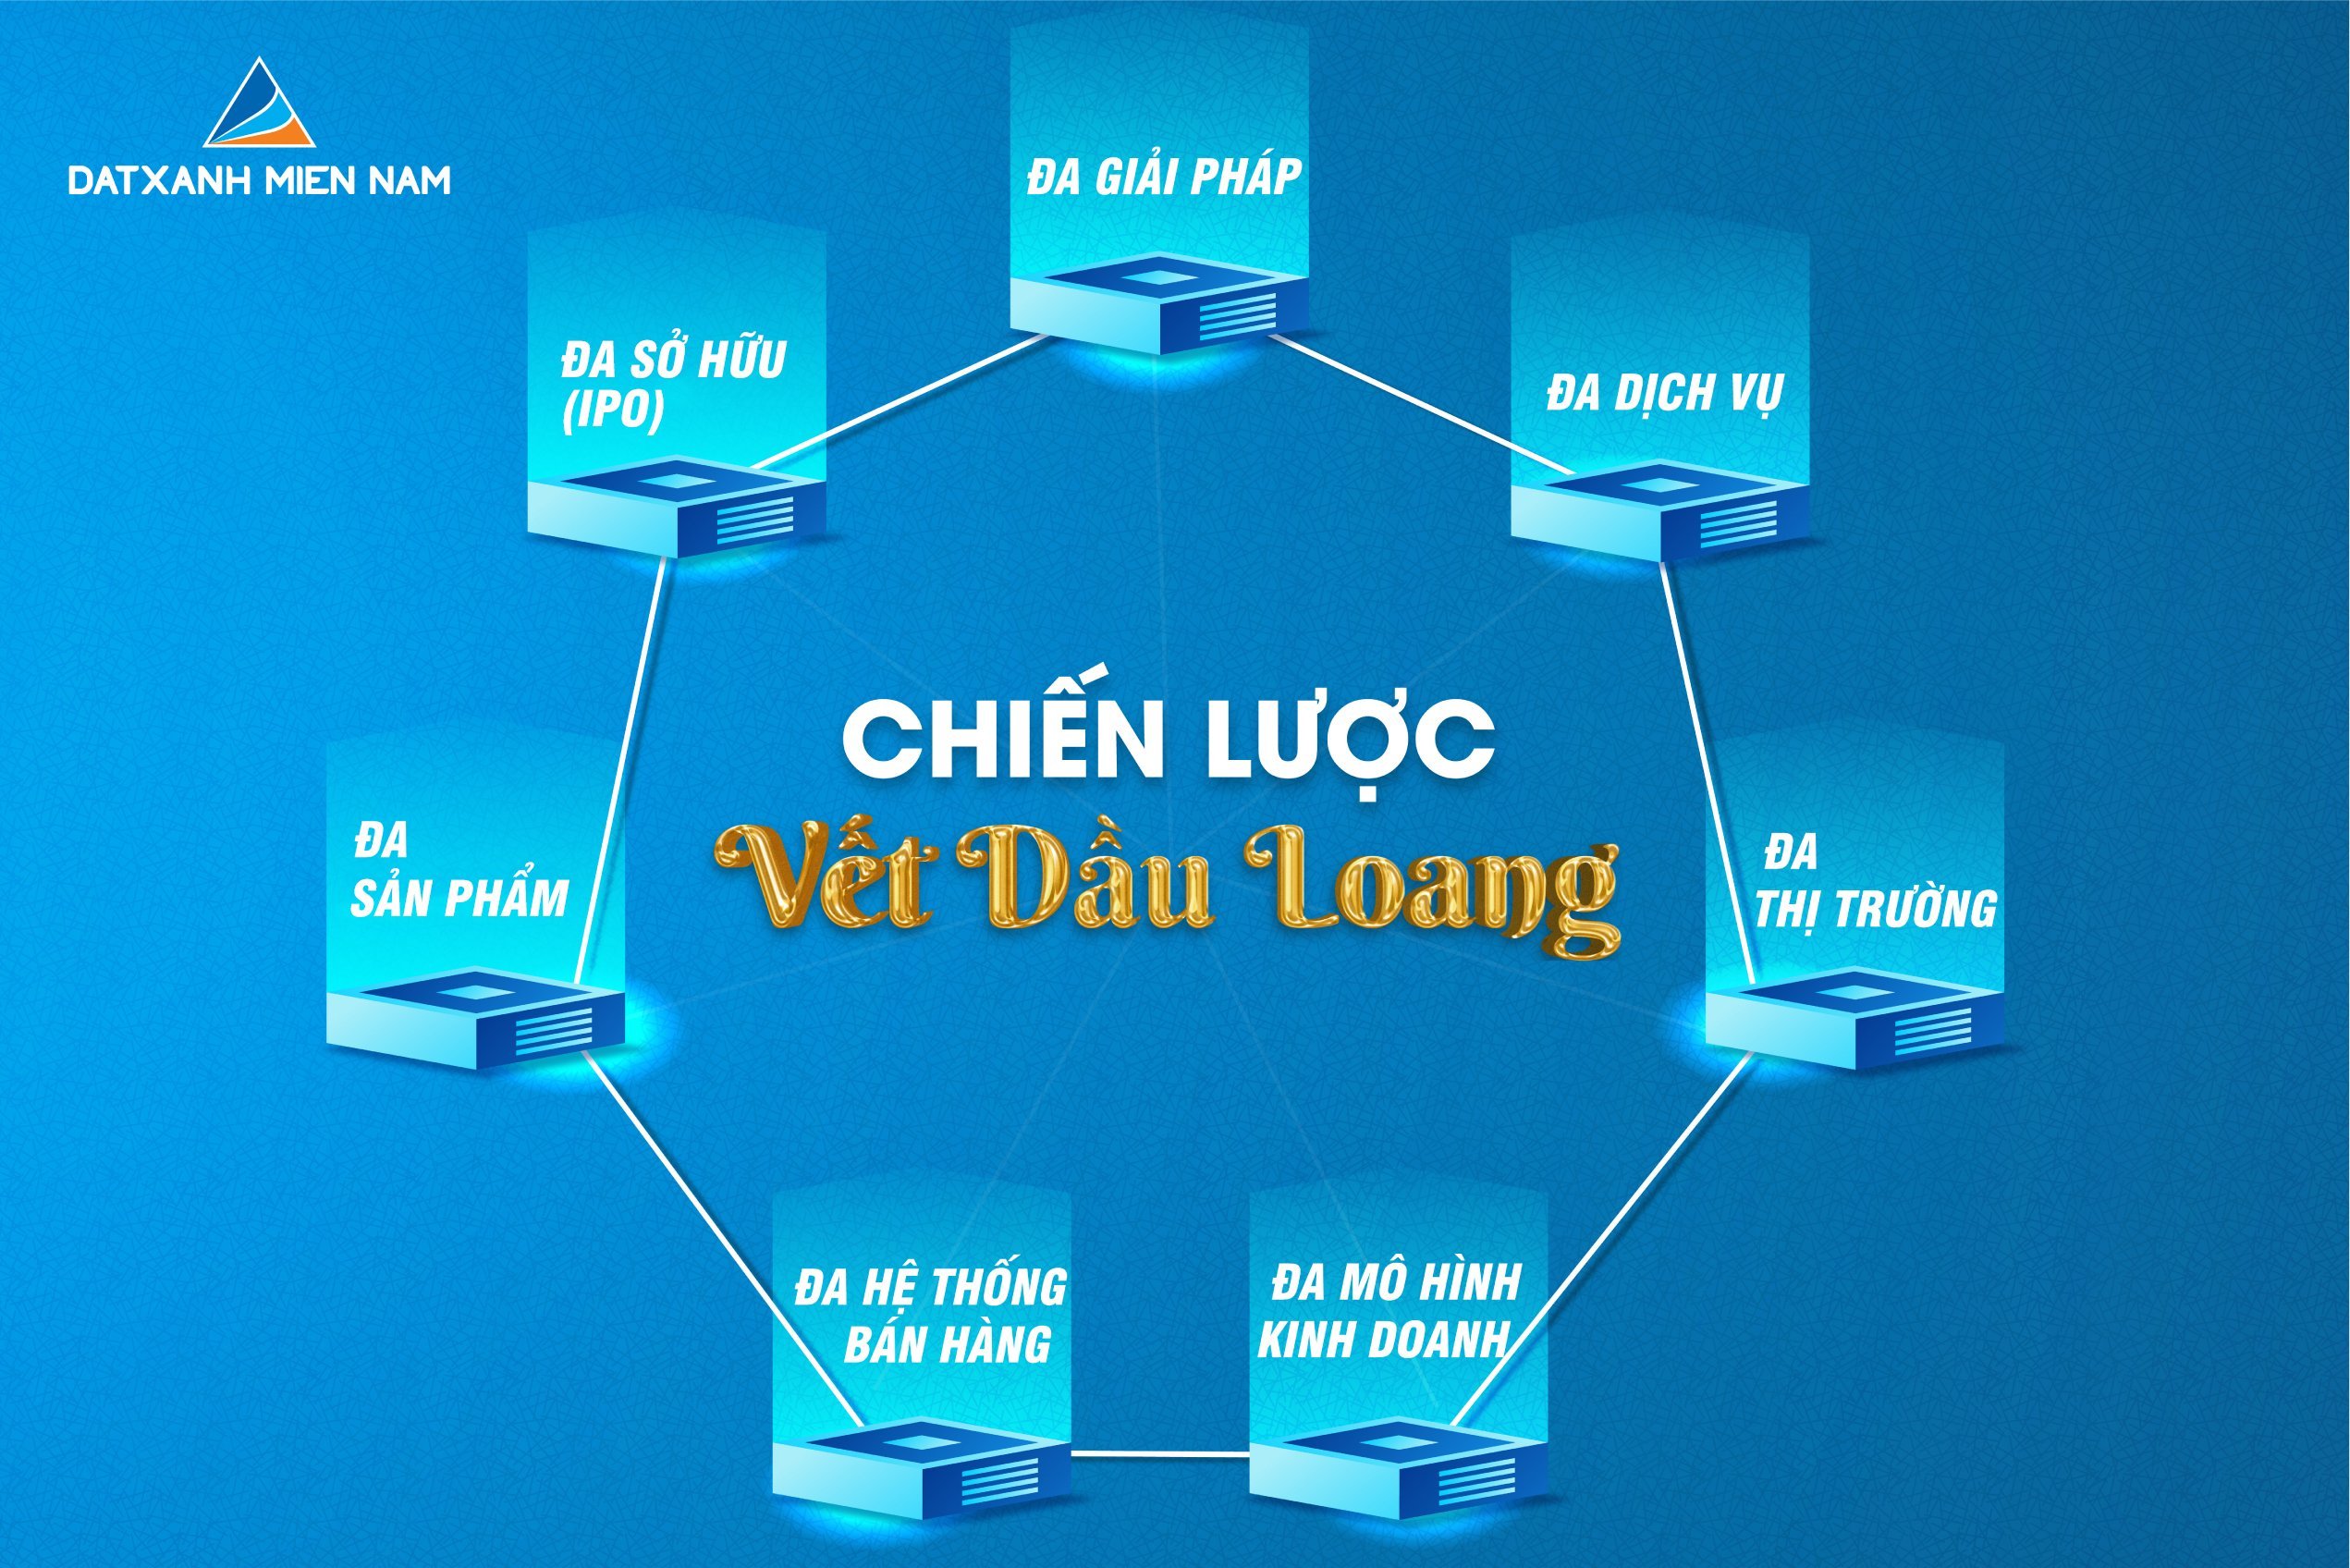 Khang Land thuộc Top 10 Sàn Giao dịch BĐS xuất sắc tiêu biểu nhất Việt Nam   Khang Land